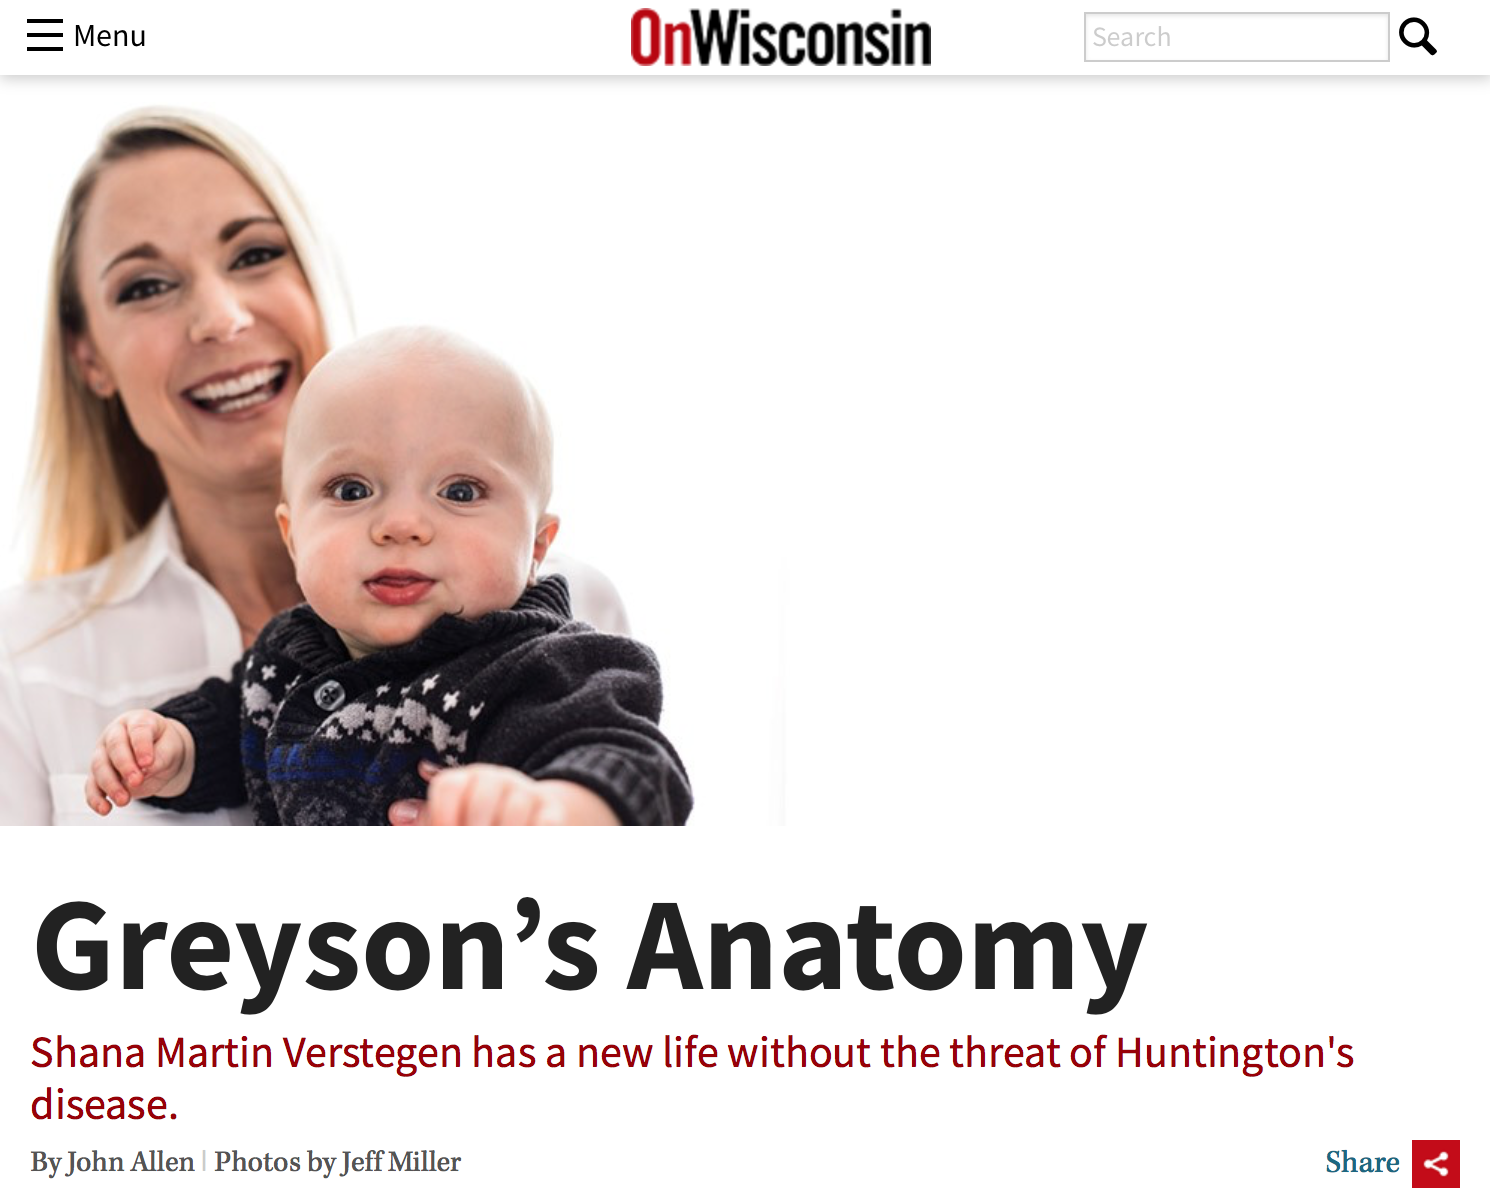 Greyson’s Anatomy: On Wisconsin Magazine 2016